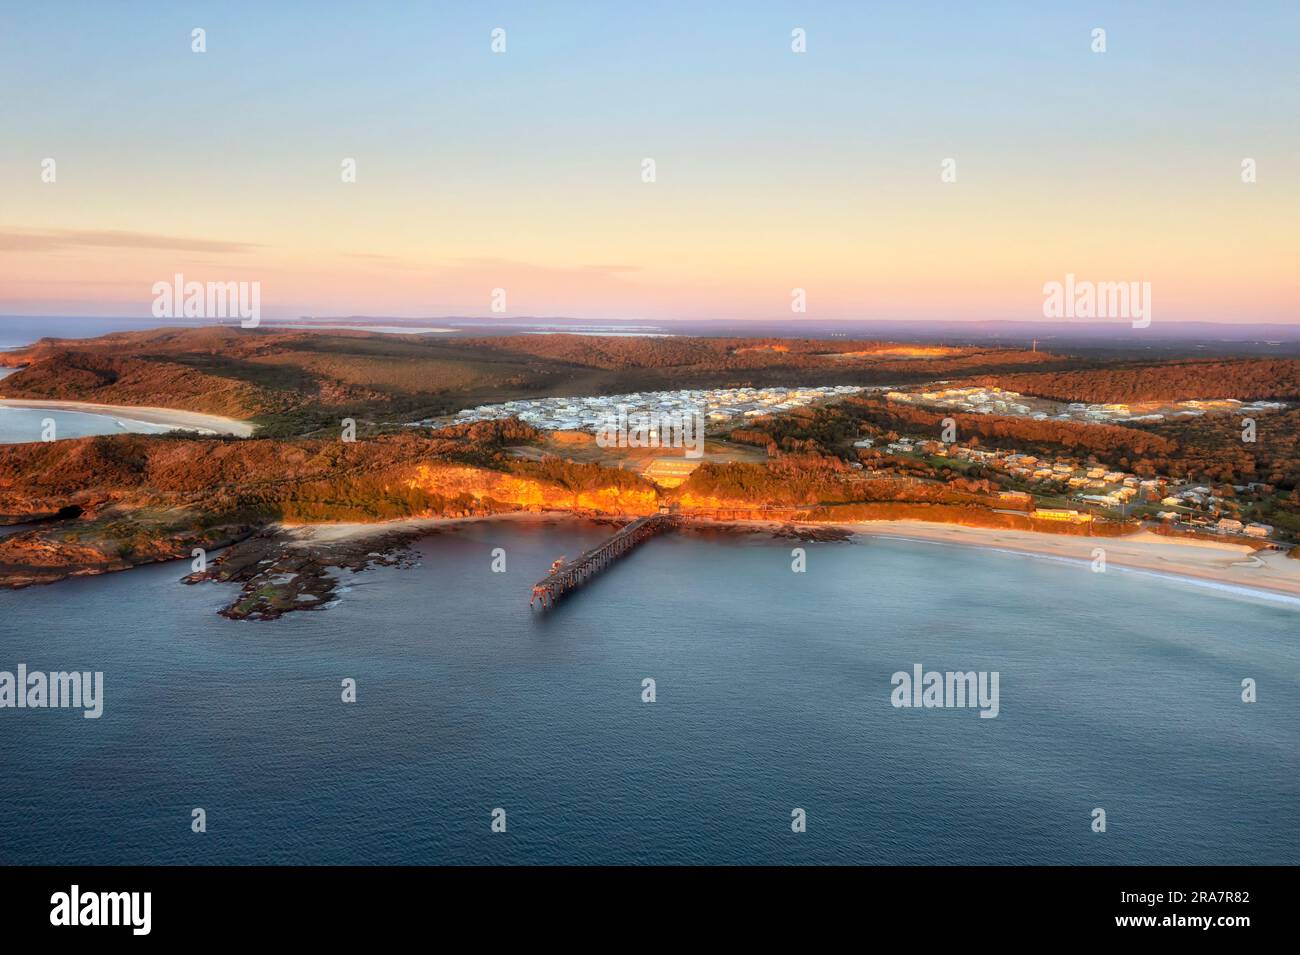 Middle Camp Beach nella cittadina della baia di Catherine Hill sulla costa australiana del Pacifico con il molo storico e il paesaggio aereo dell'alba. Foto Stock